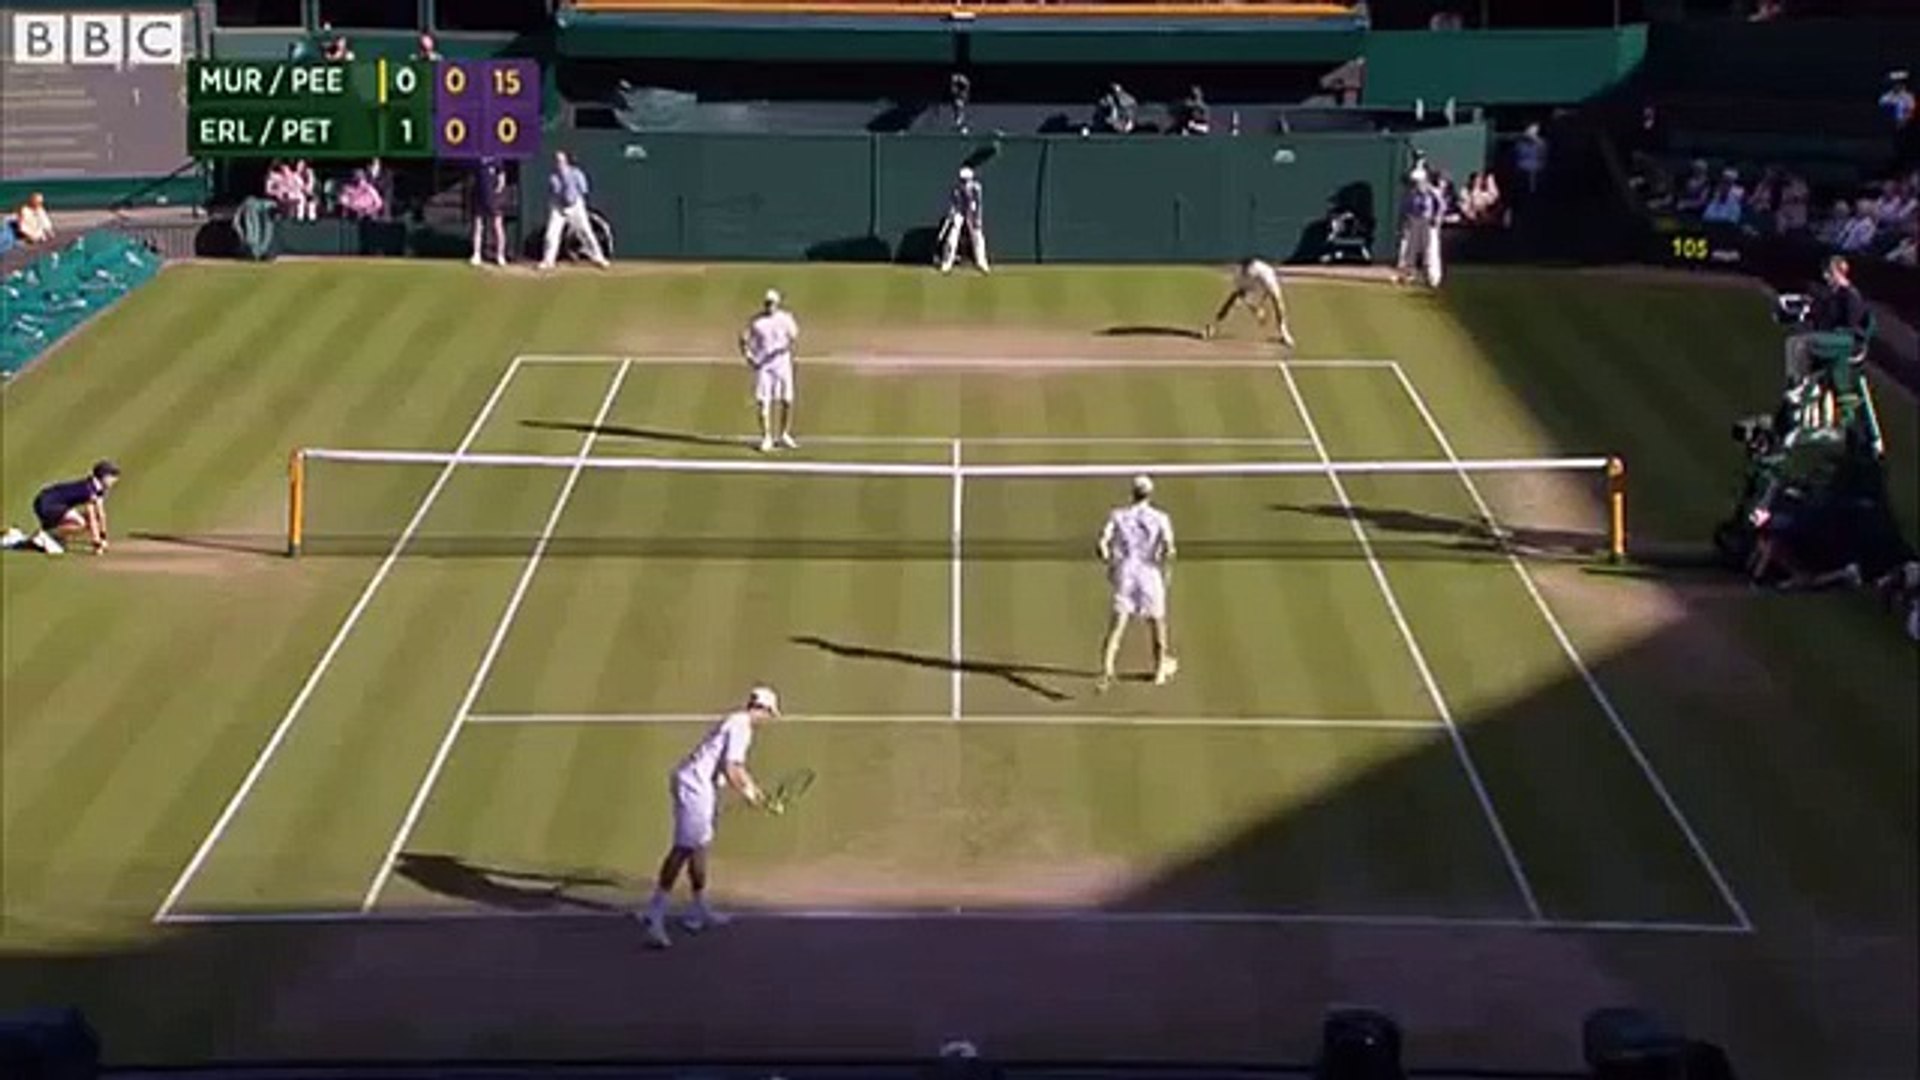 David Beckham catches Tennis ball at Wimbledon! - video Dailymotion